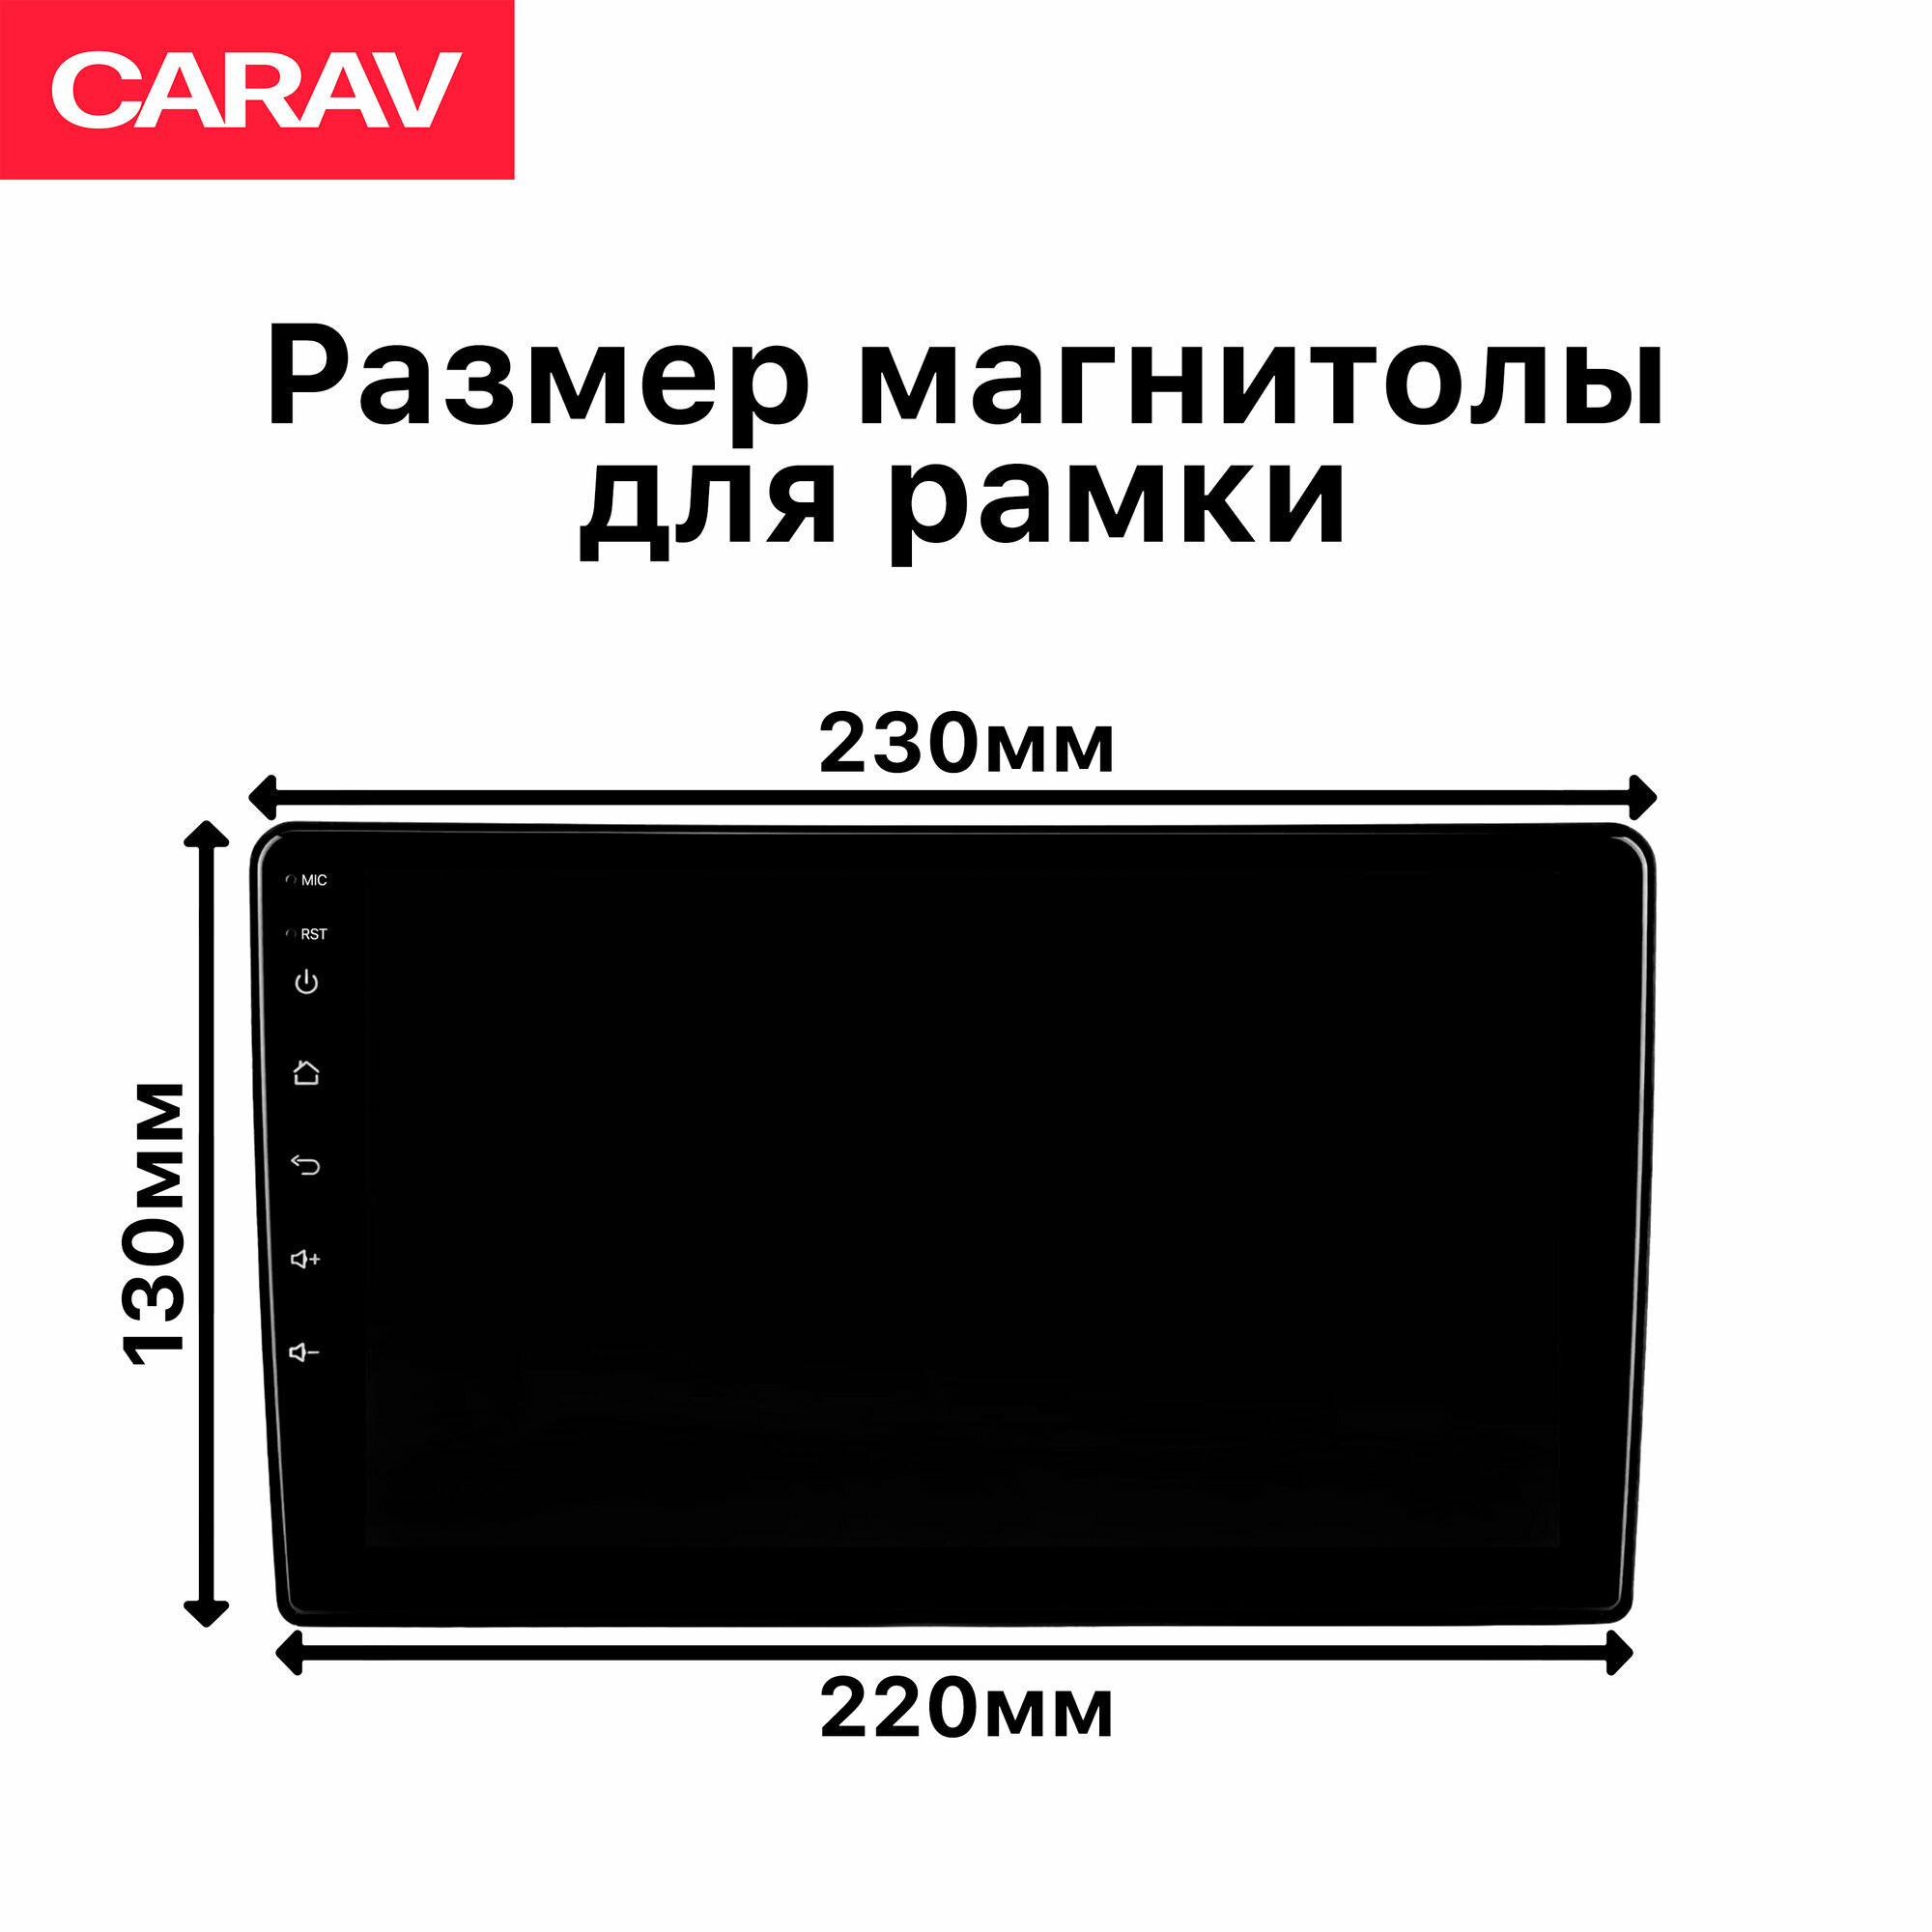 Рамка универсальная Carav 2din для перехода с размера 7 дюймов на 9 дюймов